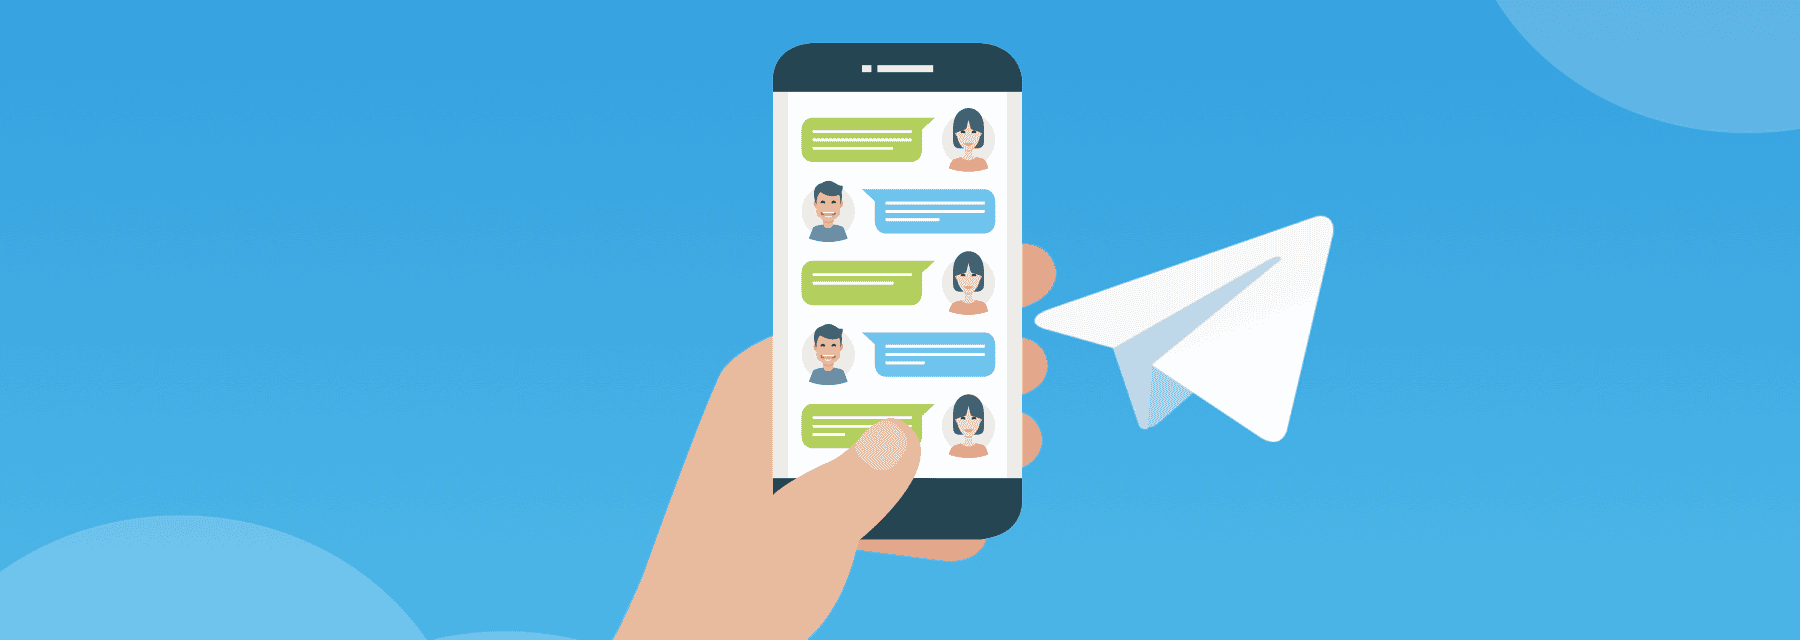 Що таке Telegram: огляд основних фішок месенджера